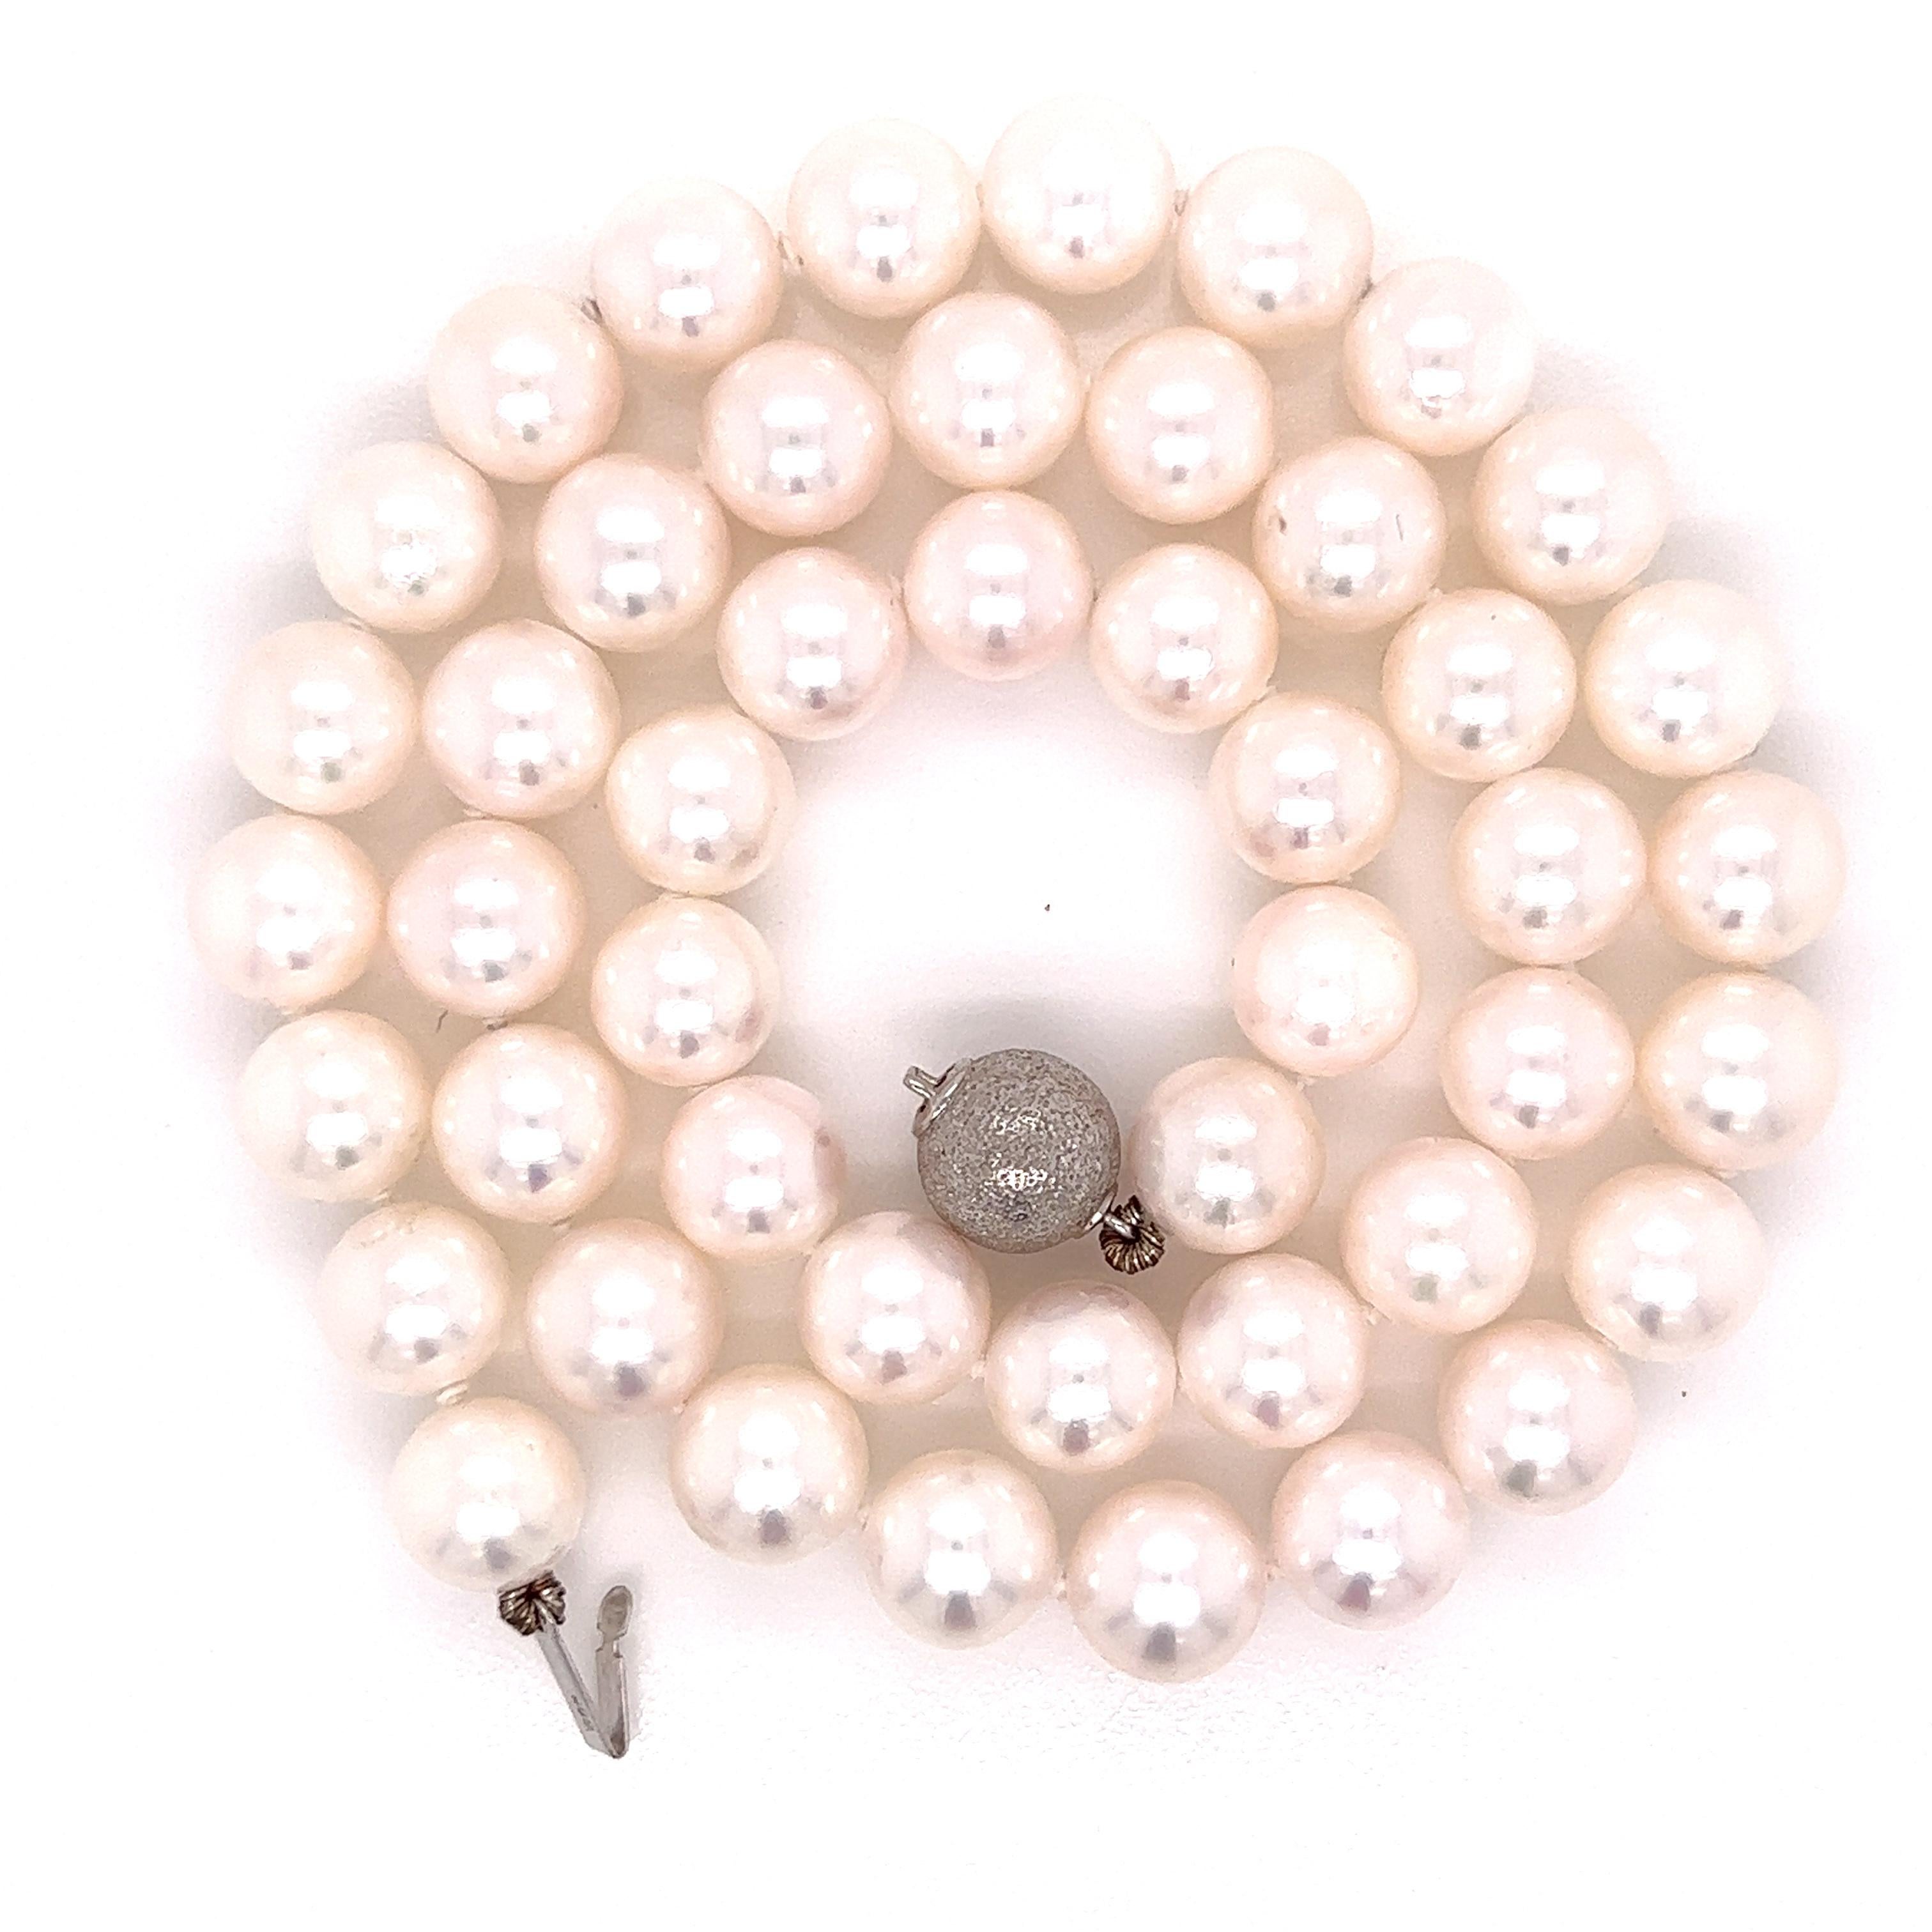 Vervollständigen Sie Ihren klassischen Luxus-Look mit diesem 17-Zoll-Strang aus gezüchteten  perlen.  Diese 8,5-9 mm großen Perlen haben eine leuchtend weiße bis hellrosa Farbe. Sie gelten als 